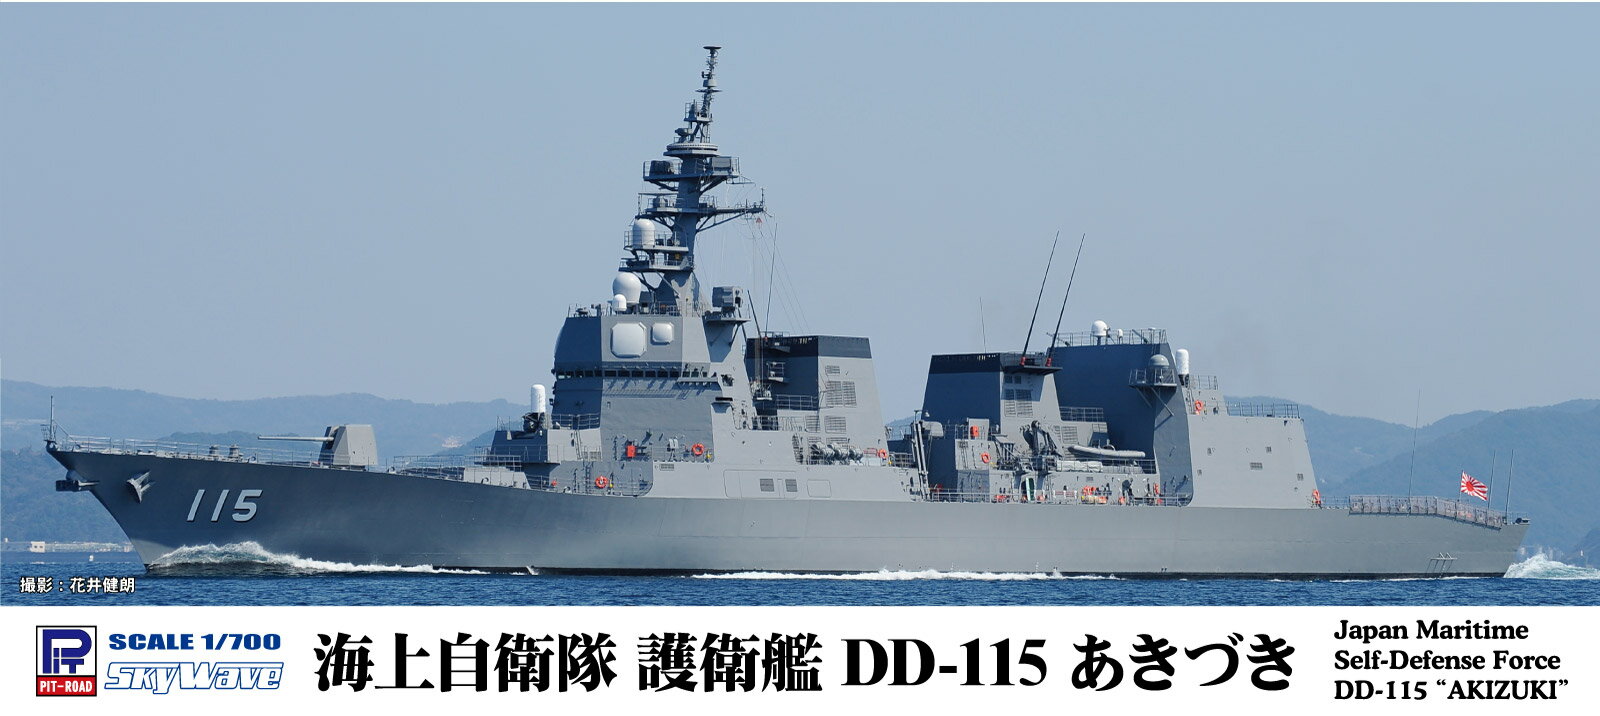 DD-115「あきづき」は前級「たかなみ」型の拡大発展型として2012年3月に就役した汎用護衛艦です。
塔型マストや一層のステルス化を図った上部構造物が外見上の特徴で、国産のFCS-3A多機能レーダーを中核とした対空戦闘システムによる僚艦防空（LAD）能力を有しています。

・1/700 プラモデル
・洋上/フルハルモデル選択可能
・SH-60K哨戒ヘリコプター×1機付属
・1隻入り　全長：218mm

【画像は製品を組み立て塗装したものです】【対象年齢】：